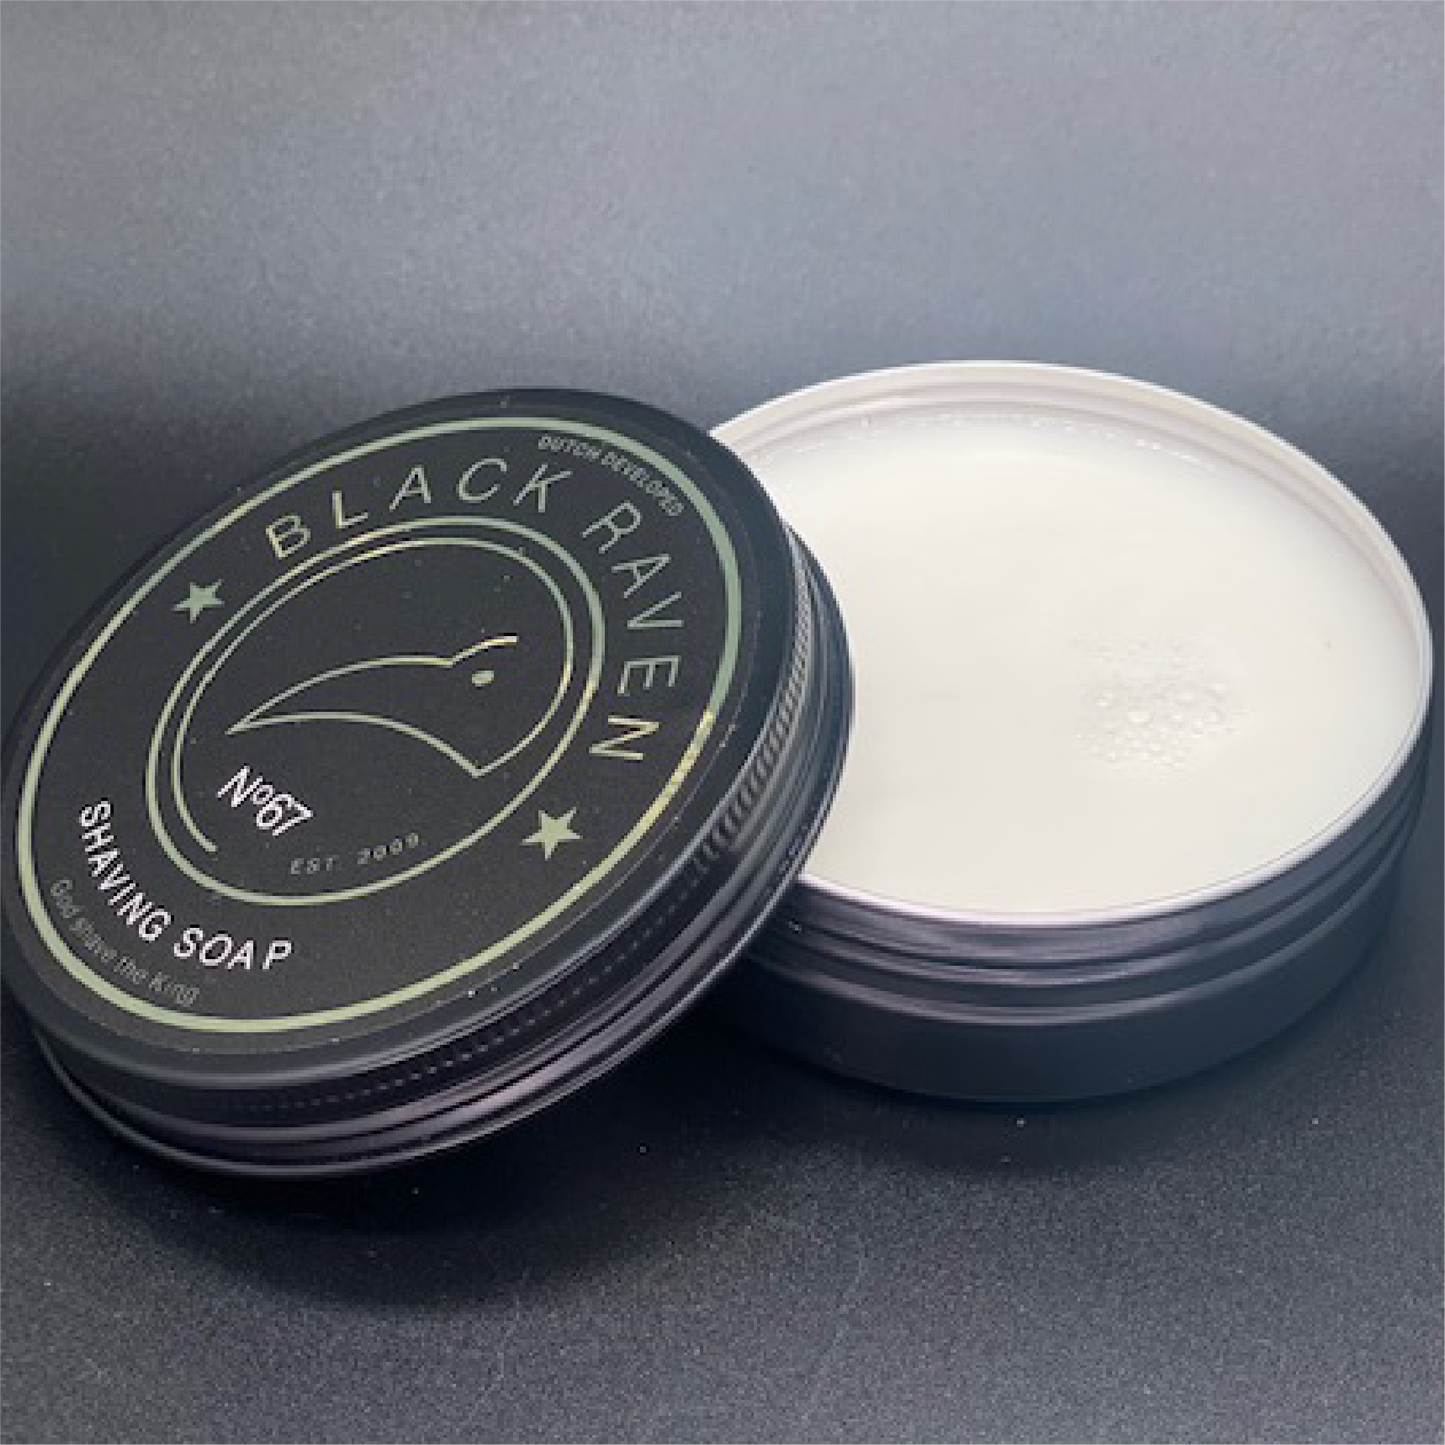 Shaving Soap No.67 - Black Raven - 100ml